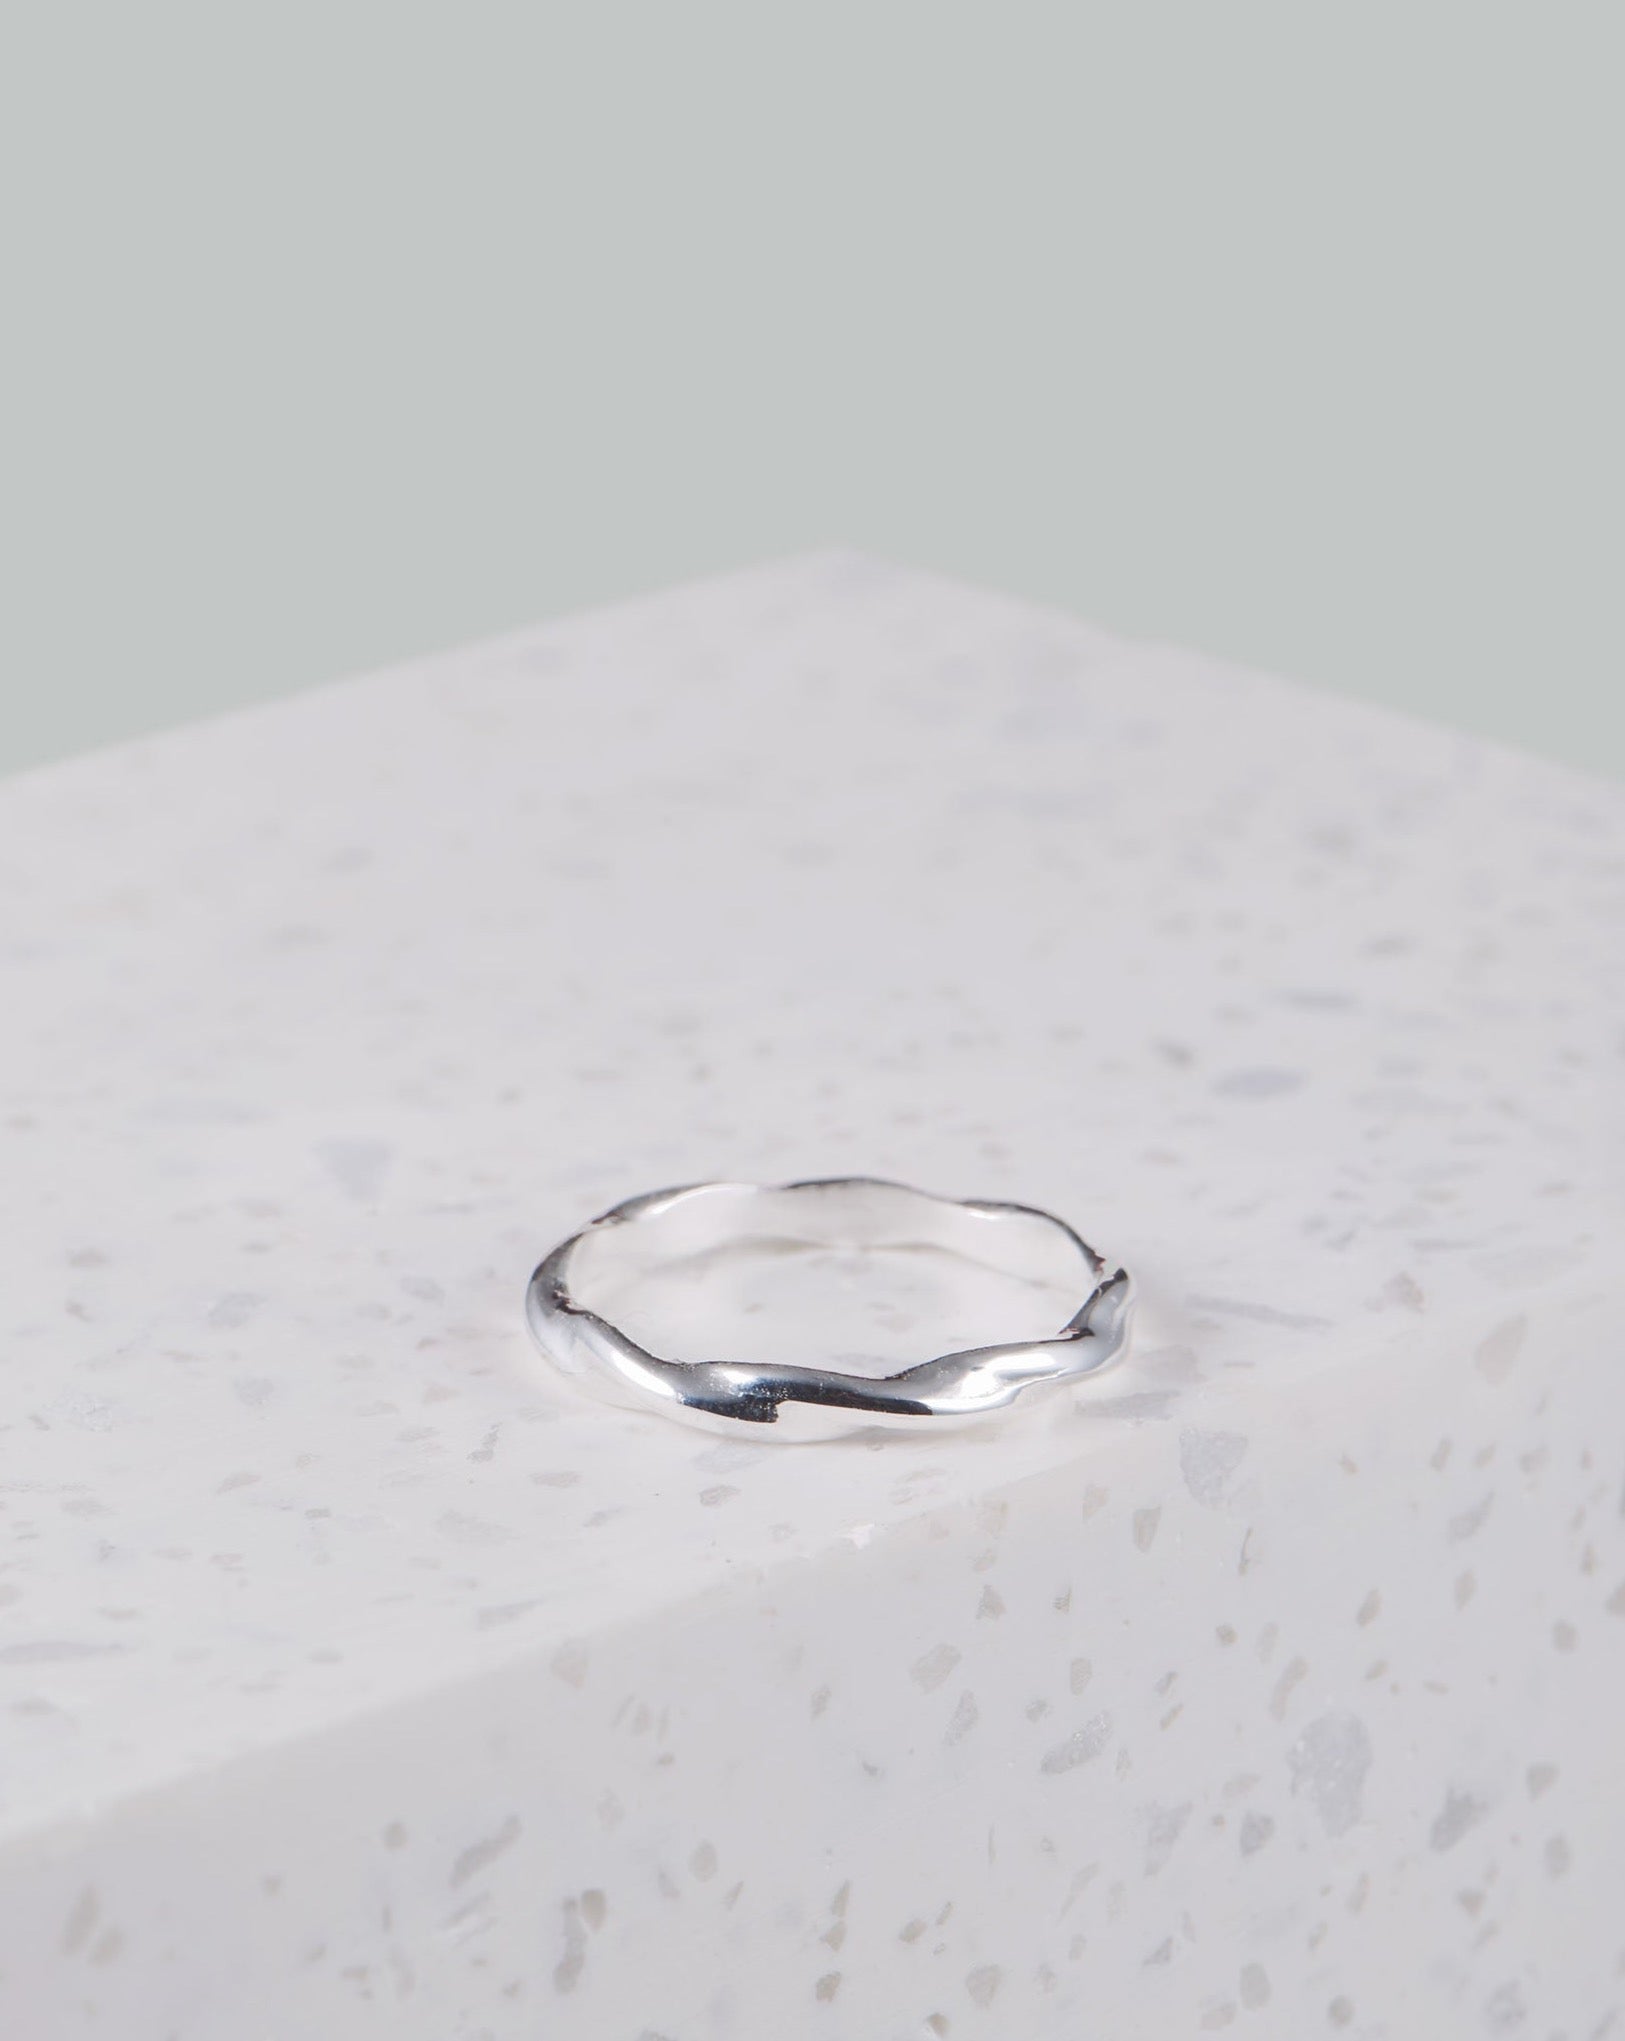 Eingedrehter Silber Ring | VERLAN Jewellery | handgemachter schmuck aus Bali | das perfekte Geschenk für Freundin finden 